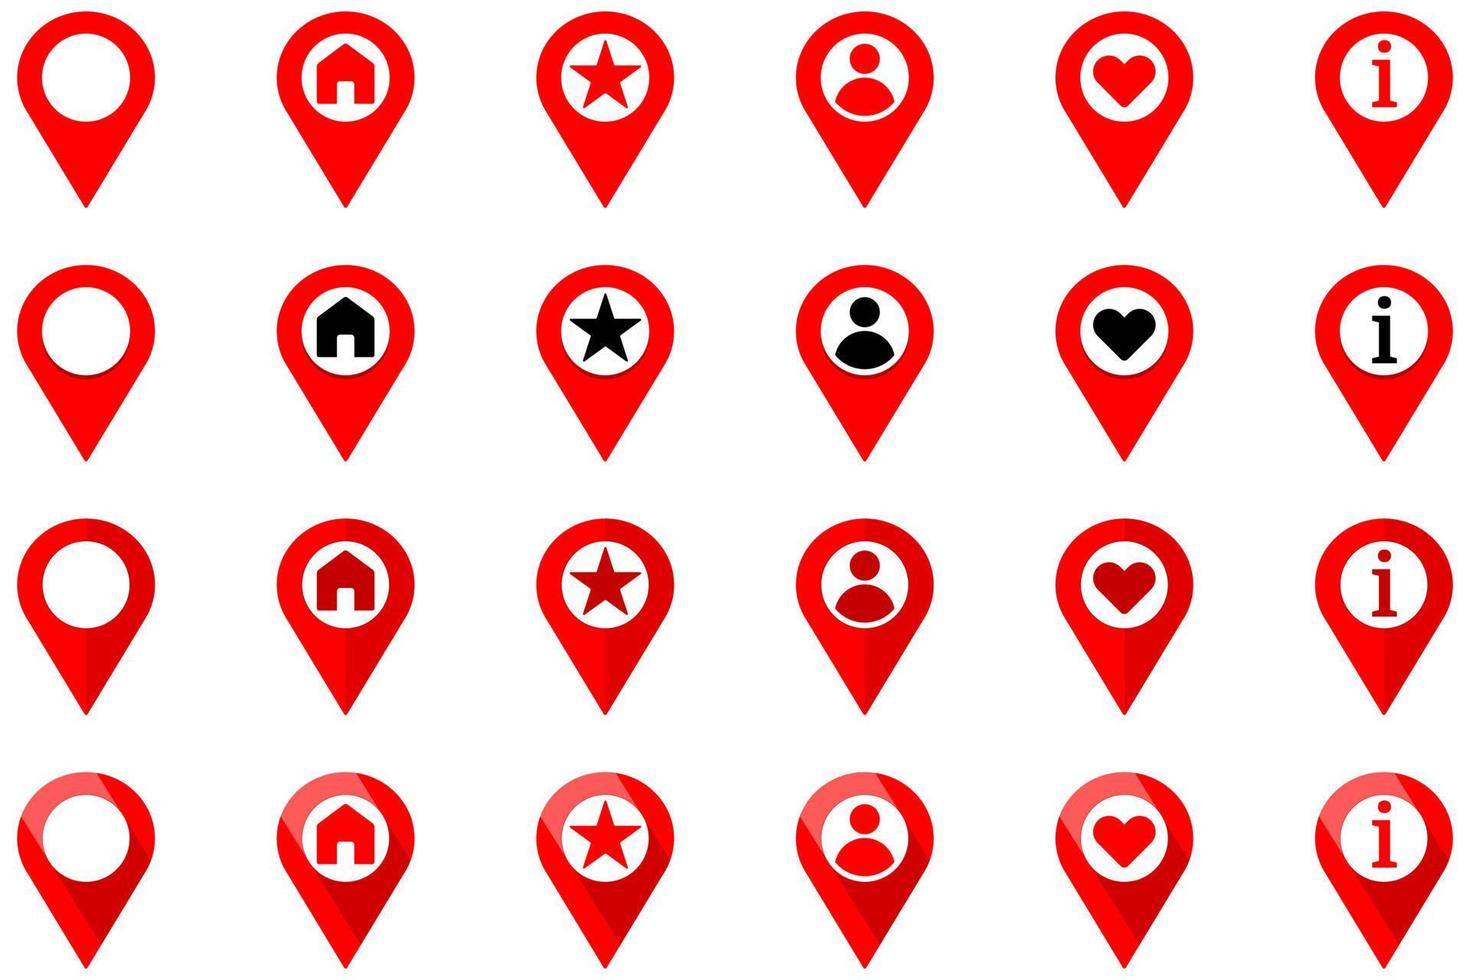 icono de pin de ubicación con símbolos de casa, estrella, personas, amor e información en el interior. ilustración vectorial plana vector